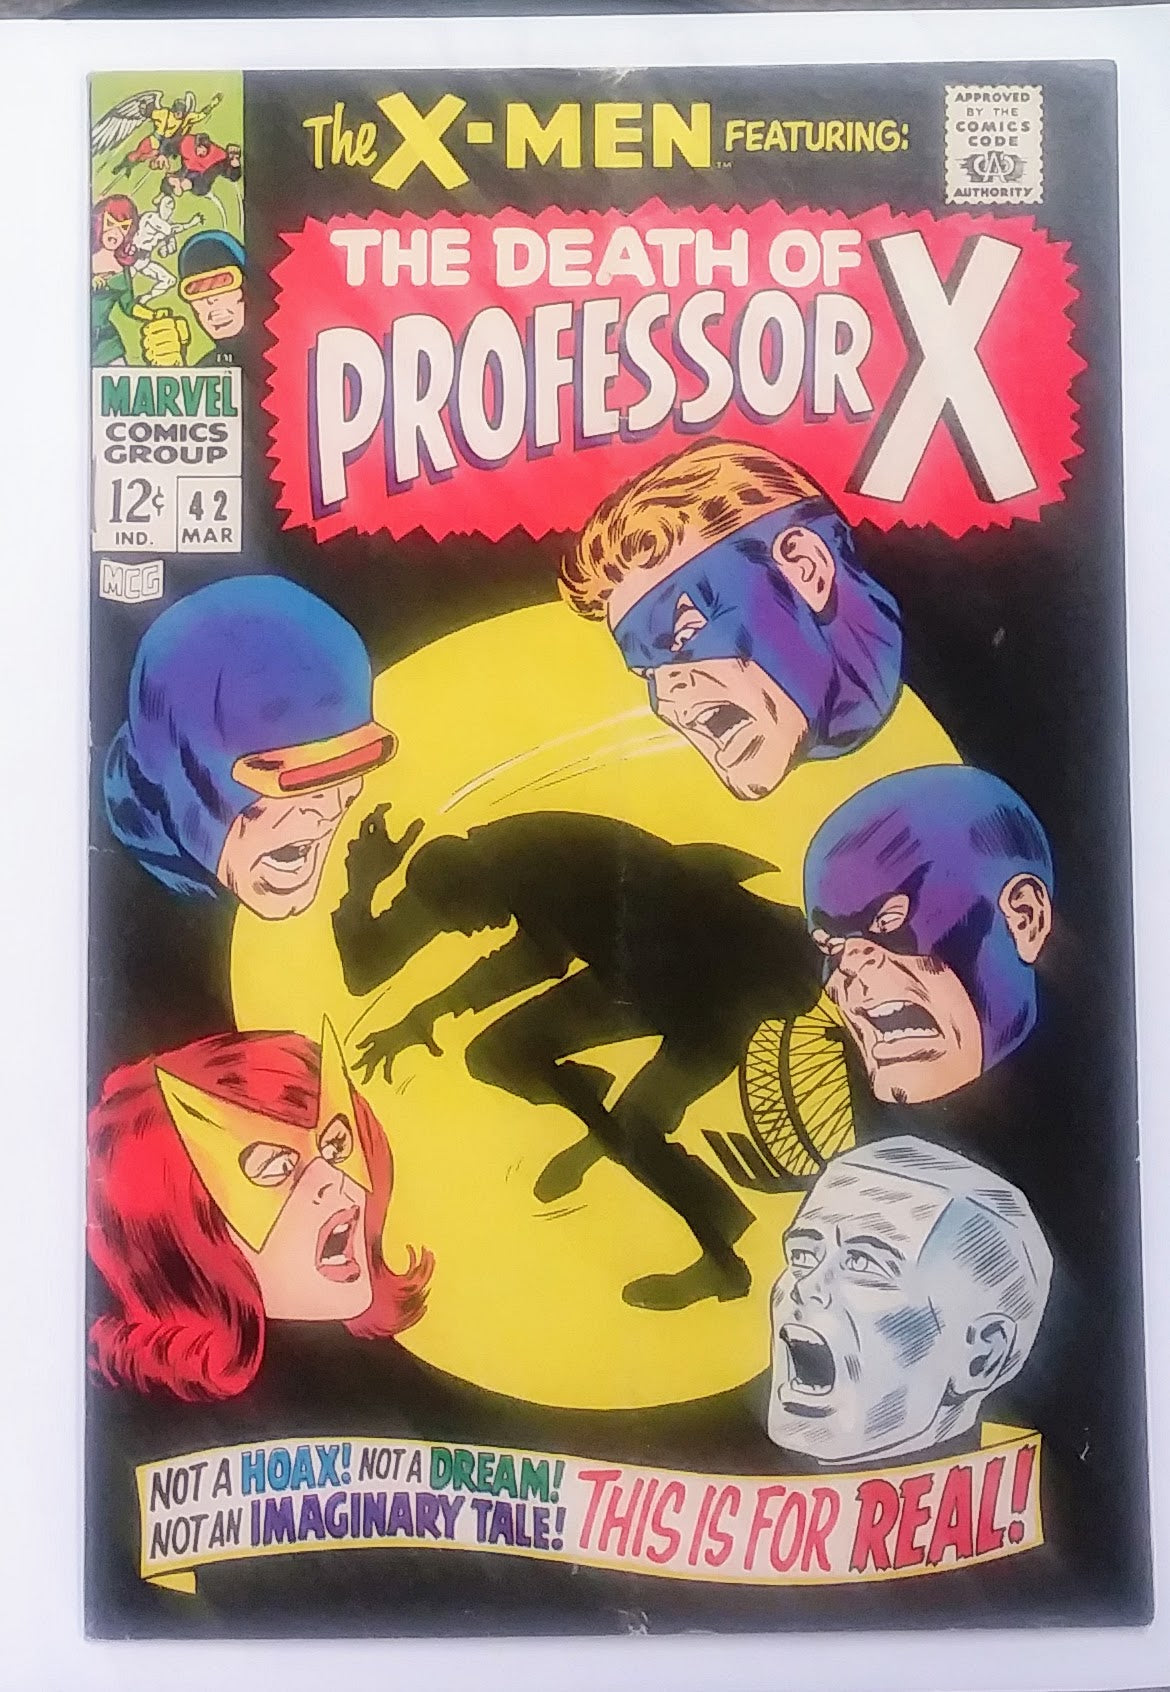 X-Men #042, Marvel Comics (March 1968)